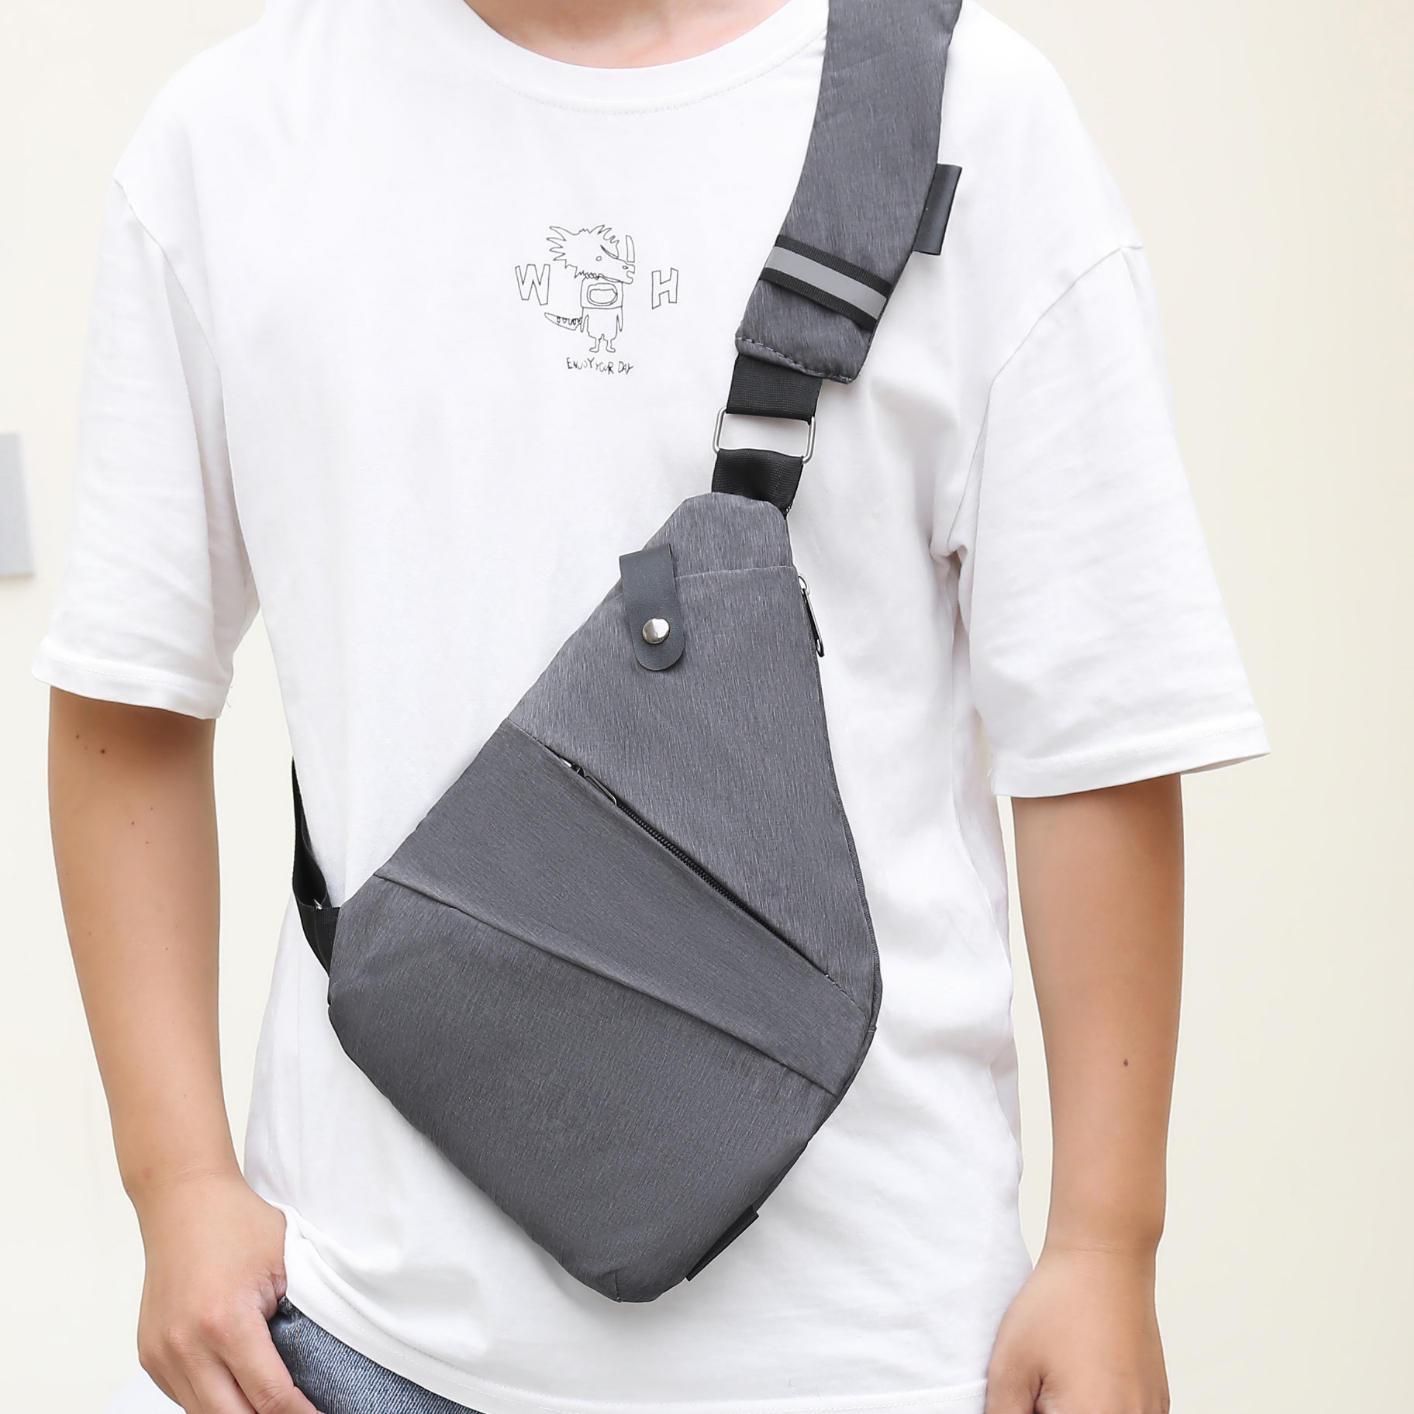 Men's Simple Outdoor Casual Water-repellent Cross-body Bag